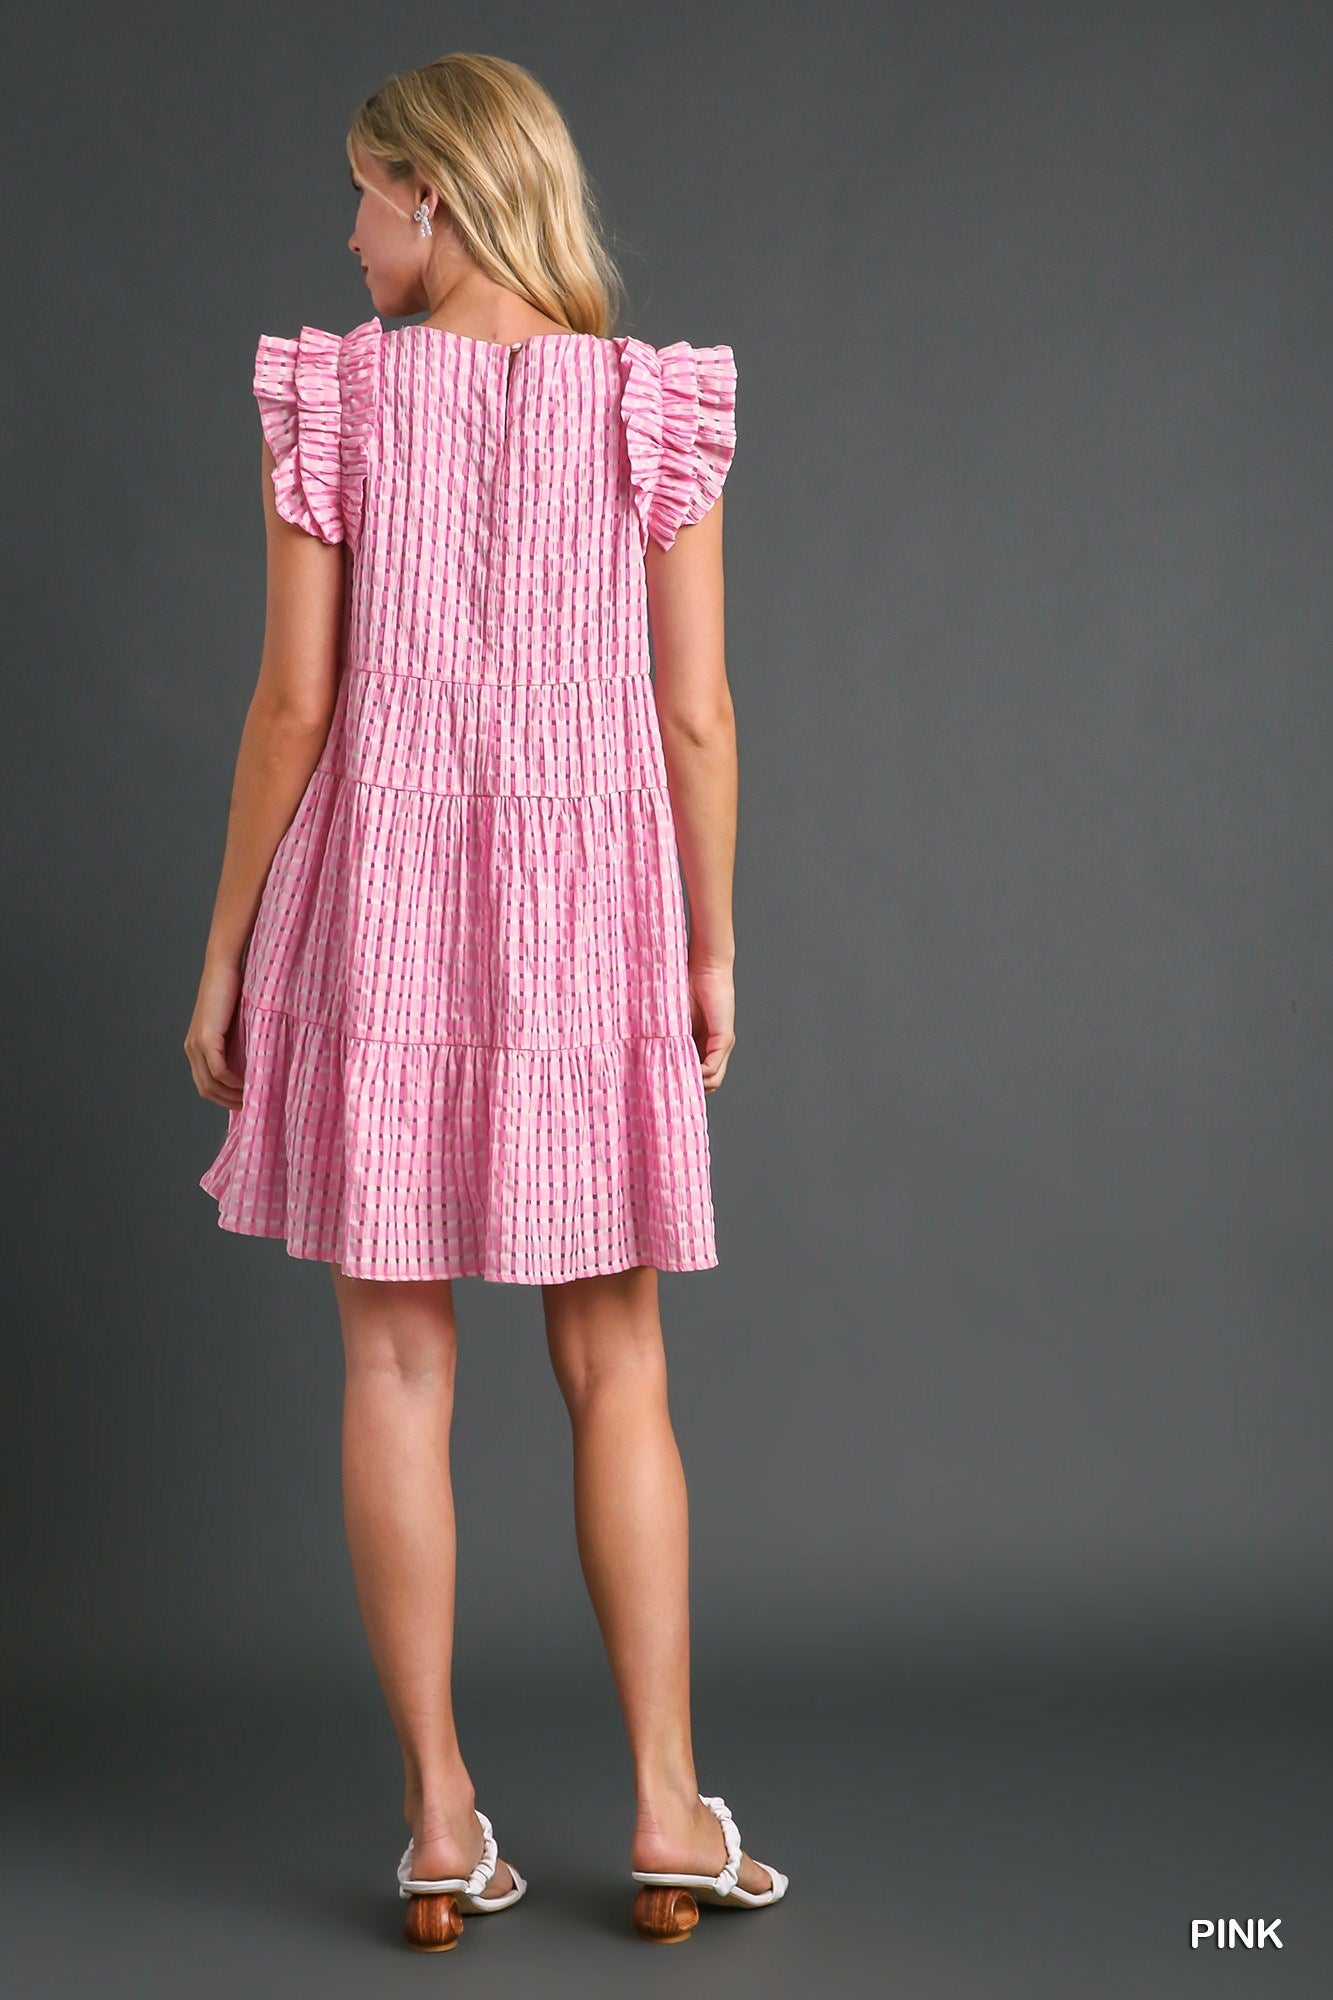 Pink Seersucker V-Neck Tiered Dress with Flutter Sleeve